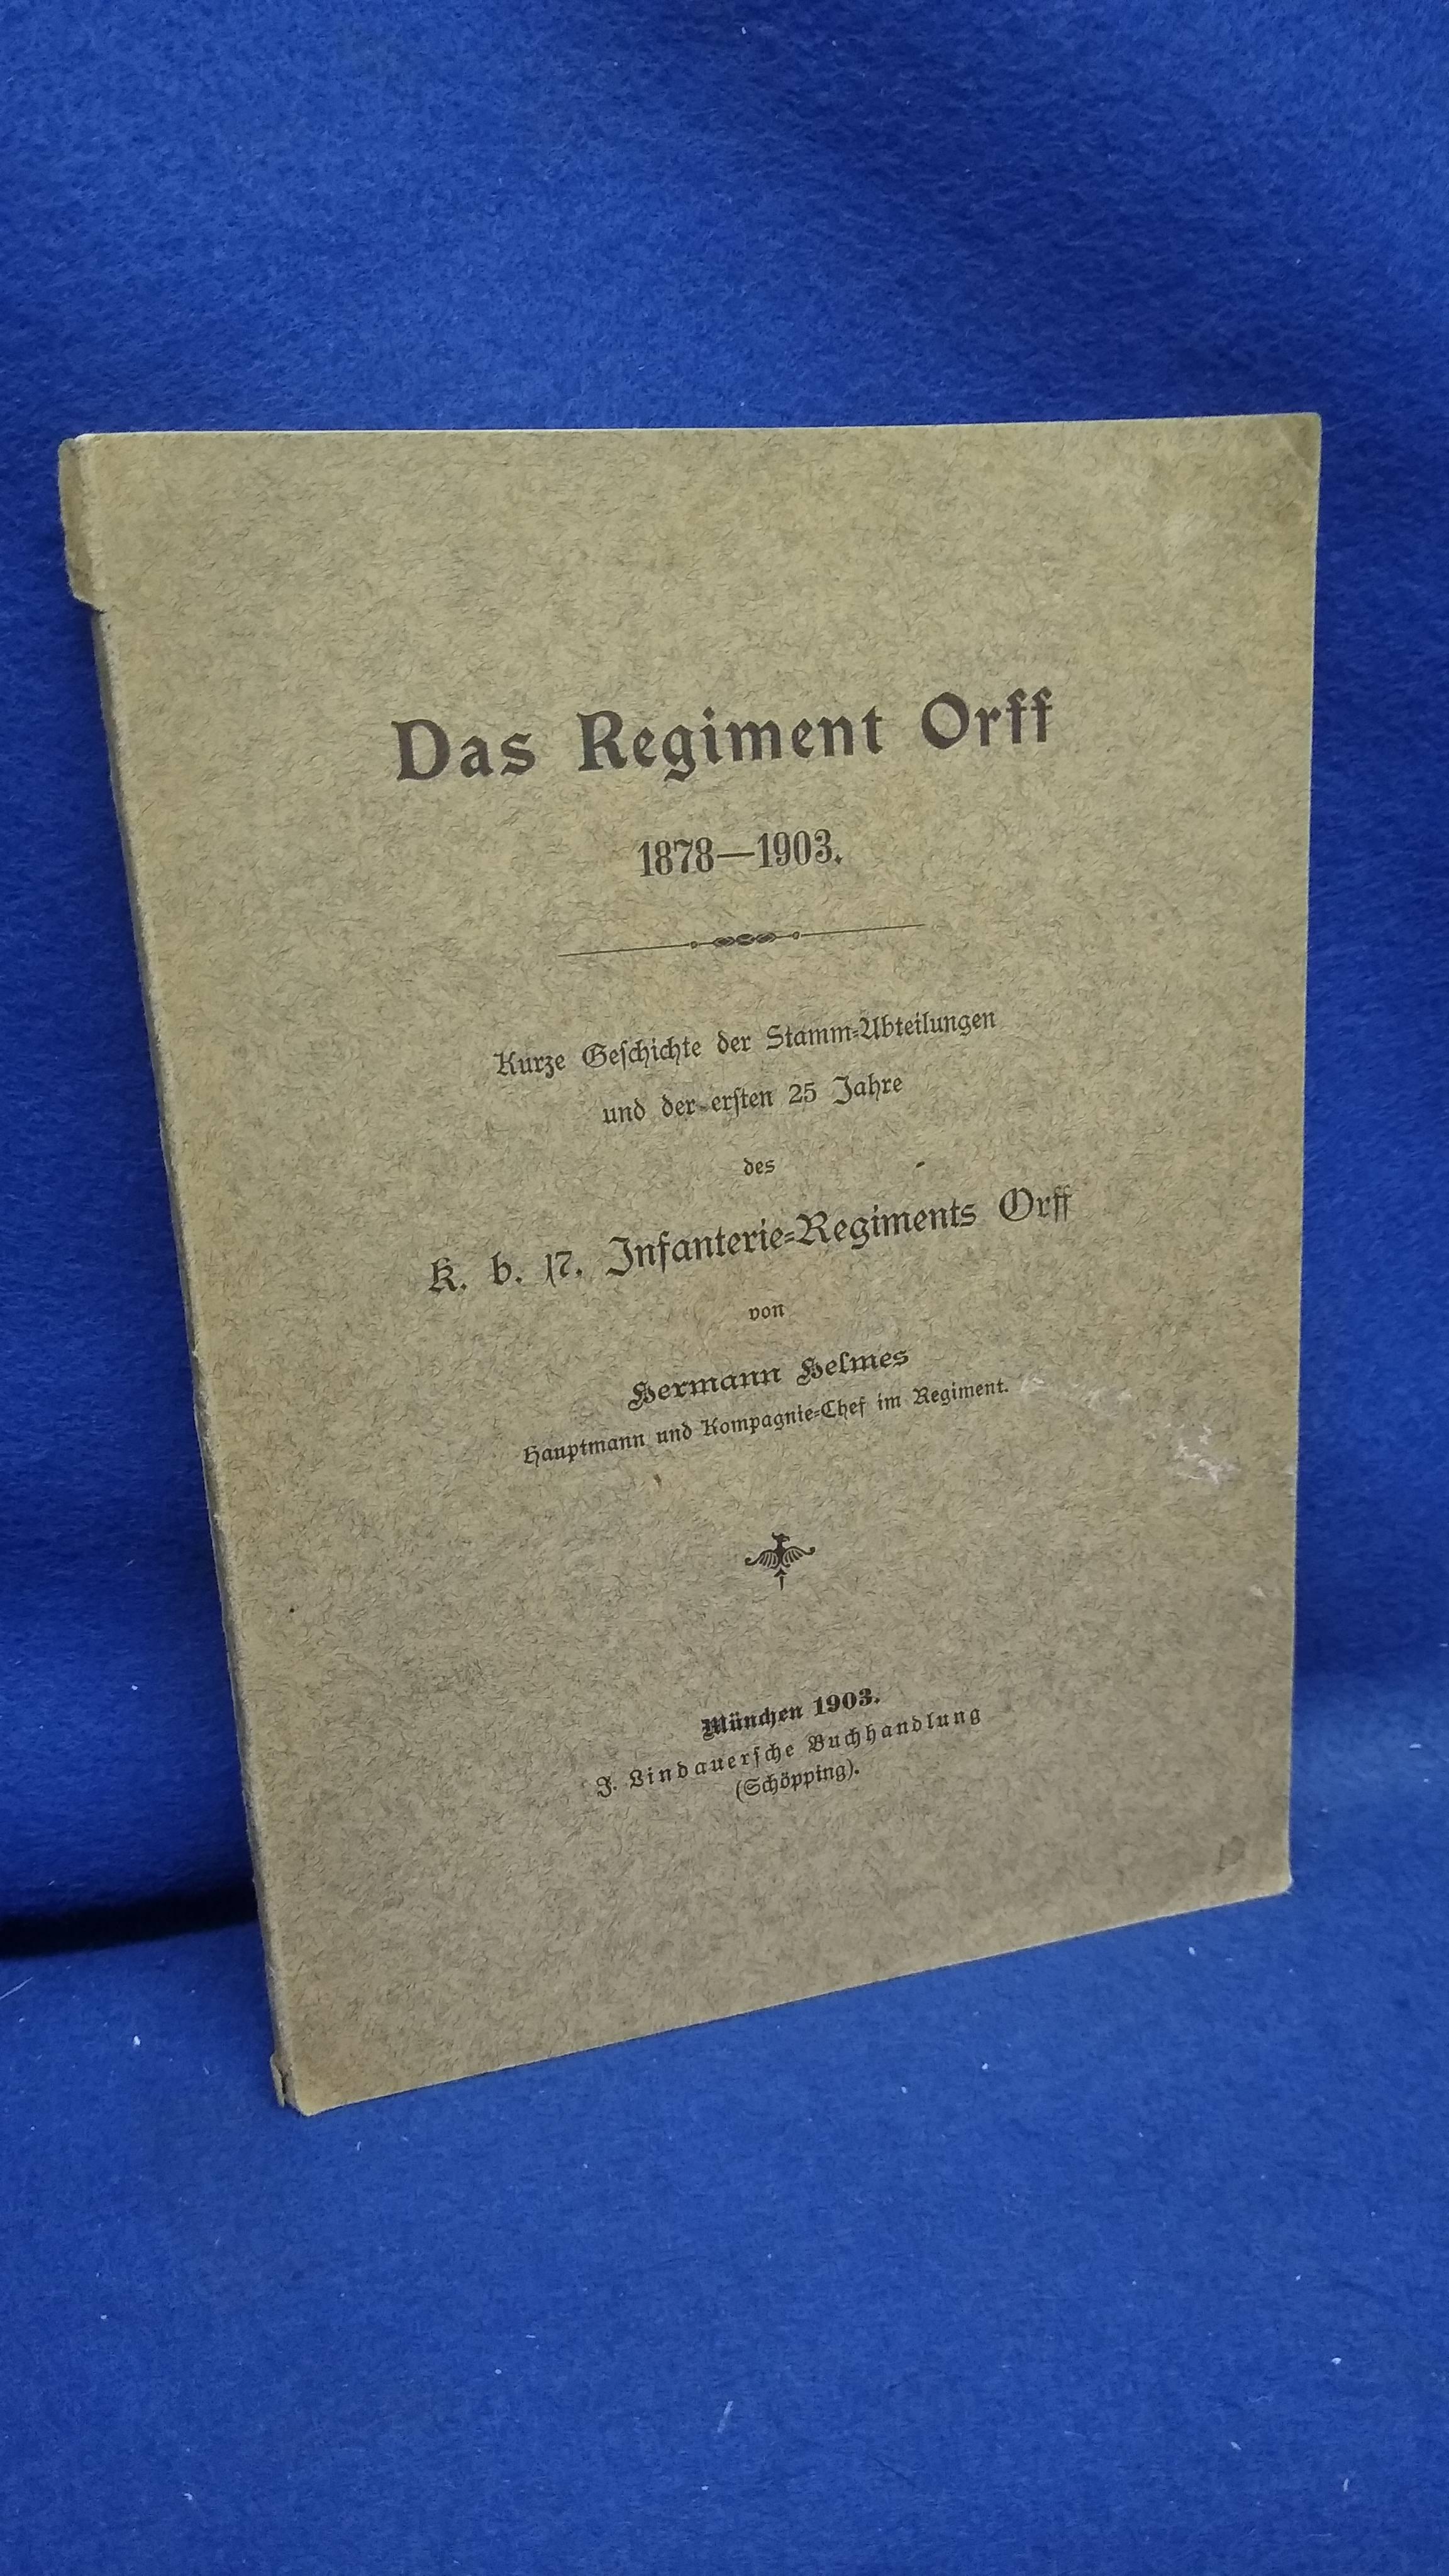 Das Regiment Orff 1878-1903. Kurze Geschichte der Stamm-Abteilungen und der ersten 25 Jahre des K.B. 17. Infanterie-Regiments Orff.